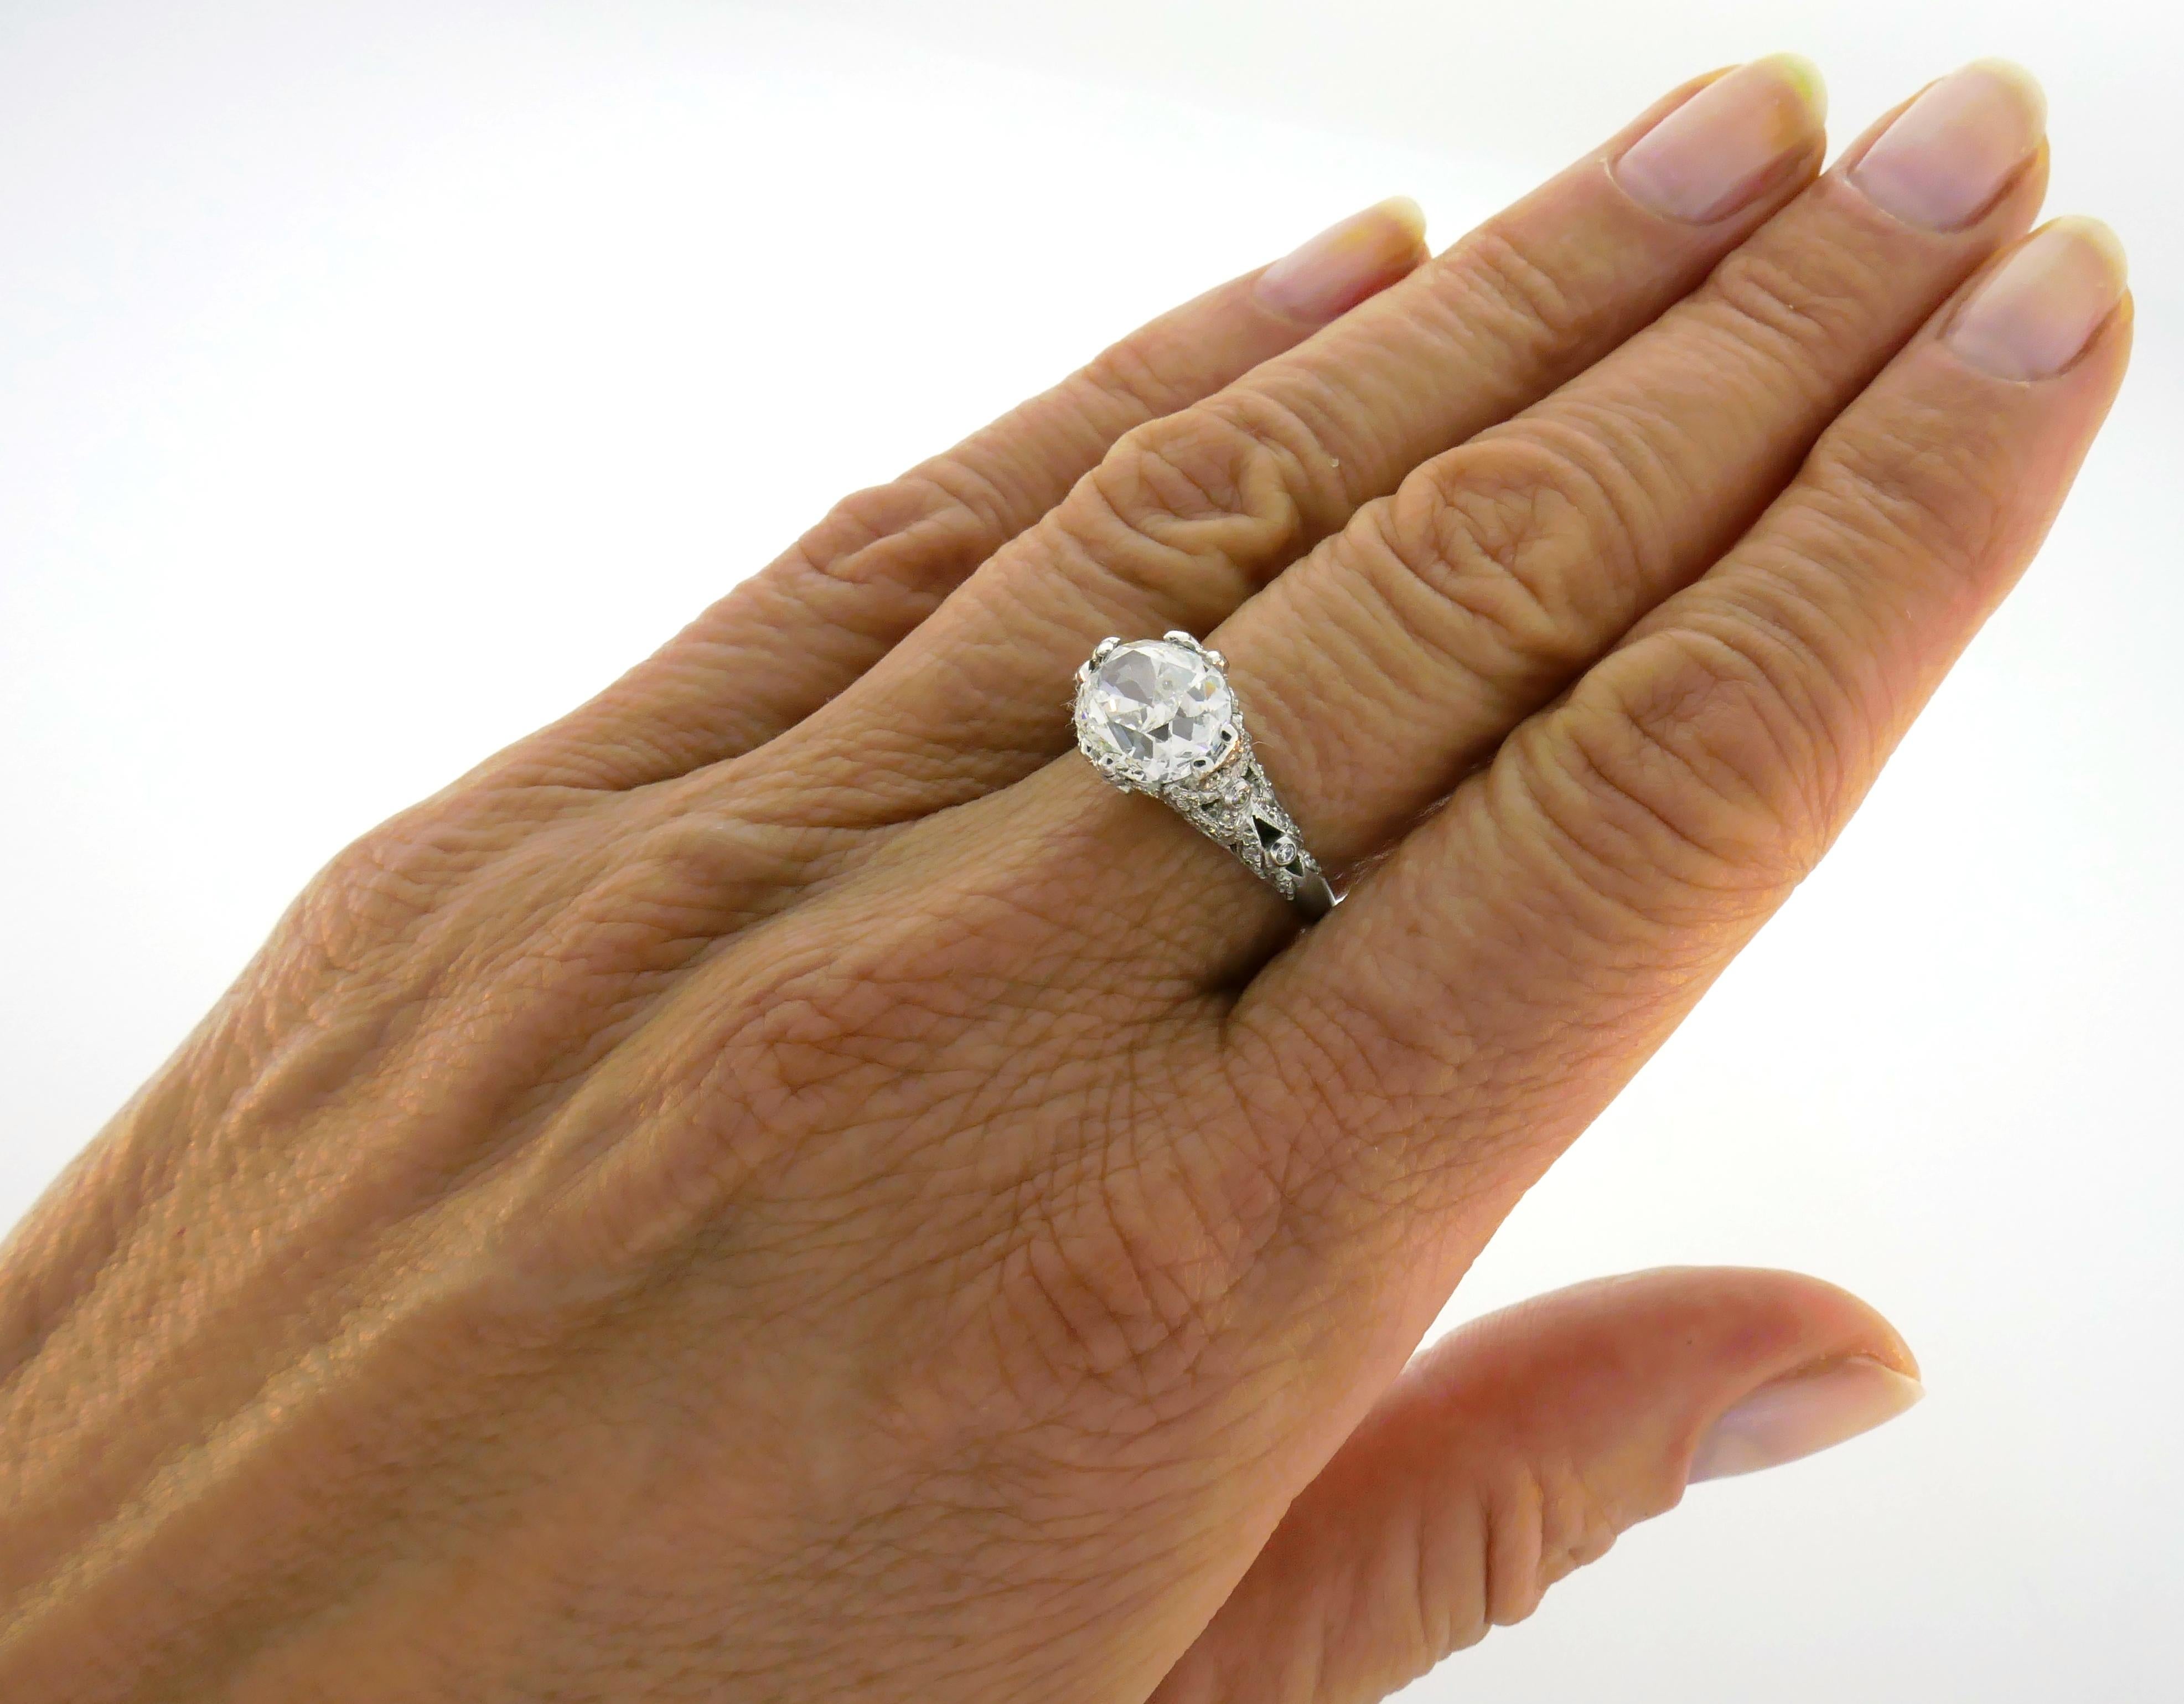 Superbe bague de fiançailles en diamant et platine. Il s'agit d'un magnifique diamant de plus de 3 carats de taille coussin, accompagné d'un certificat GIA (voir photo 10) indiquant que le diamant est de couleur G et de pureté SI1. Le diamant est de